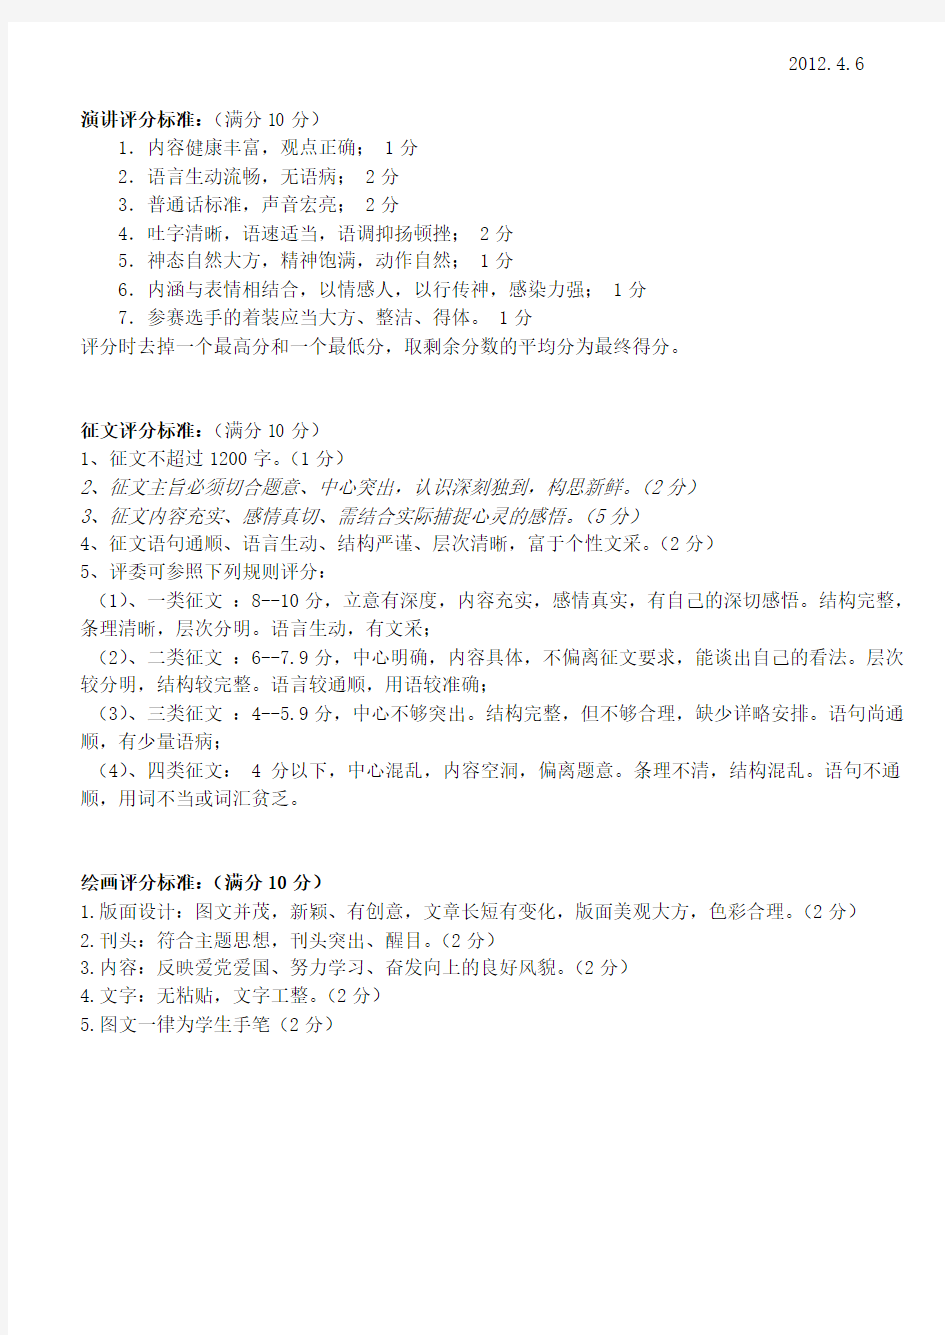 “建设幸福中国”读书教育活动方案2012.4.6